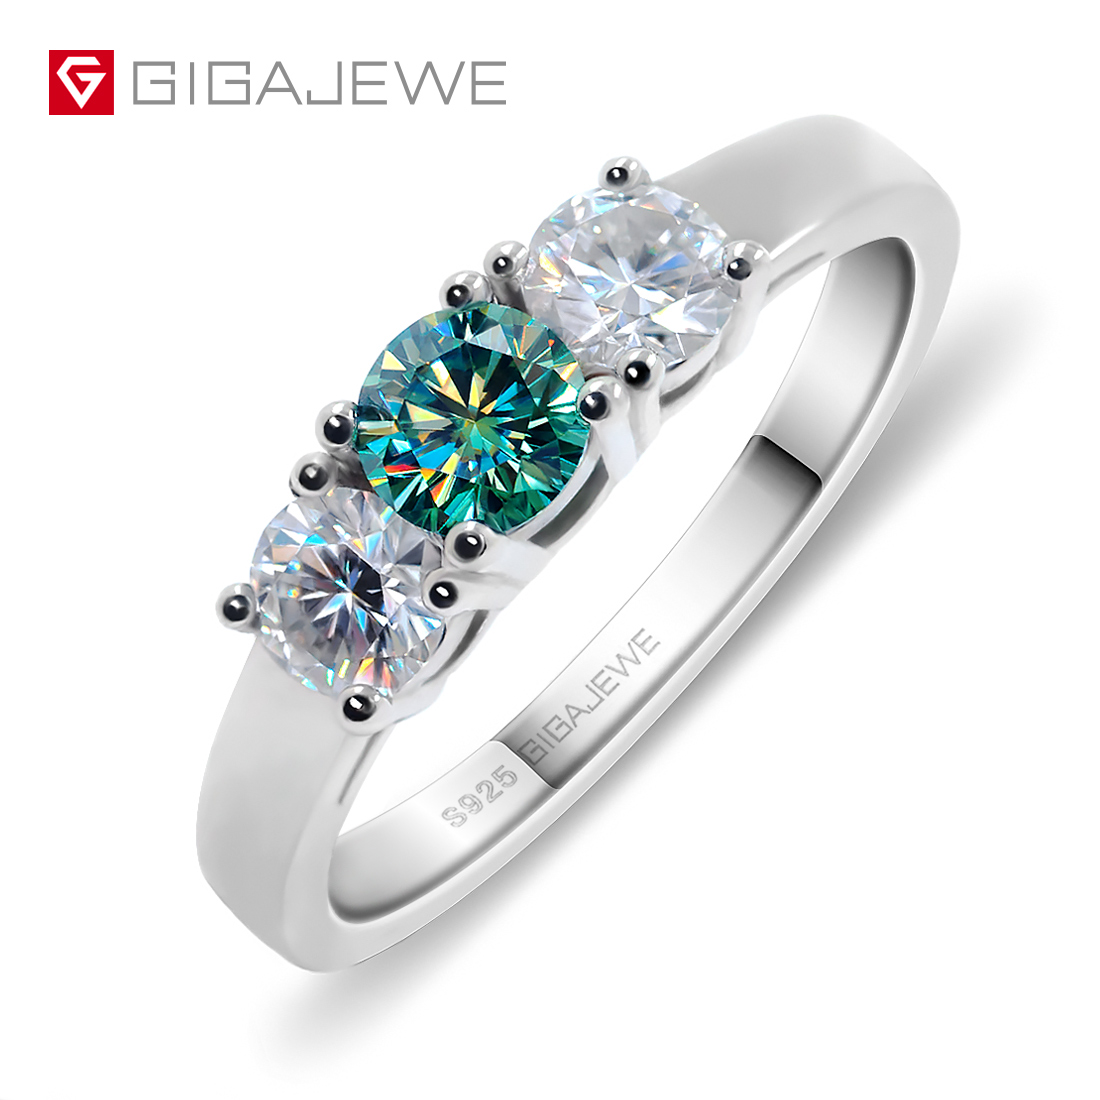 GIGAJEWE Total 1.0ct EF/Green VVS1 圆形优质切割钻石测试通过莫桑石 925 银戒指首饰女朋友礼物